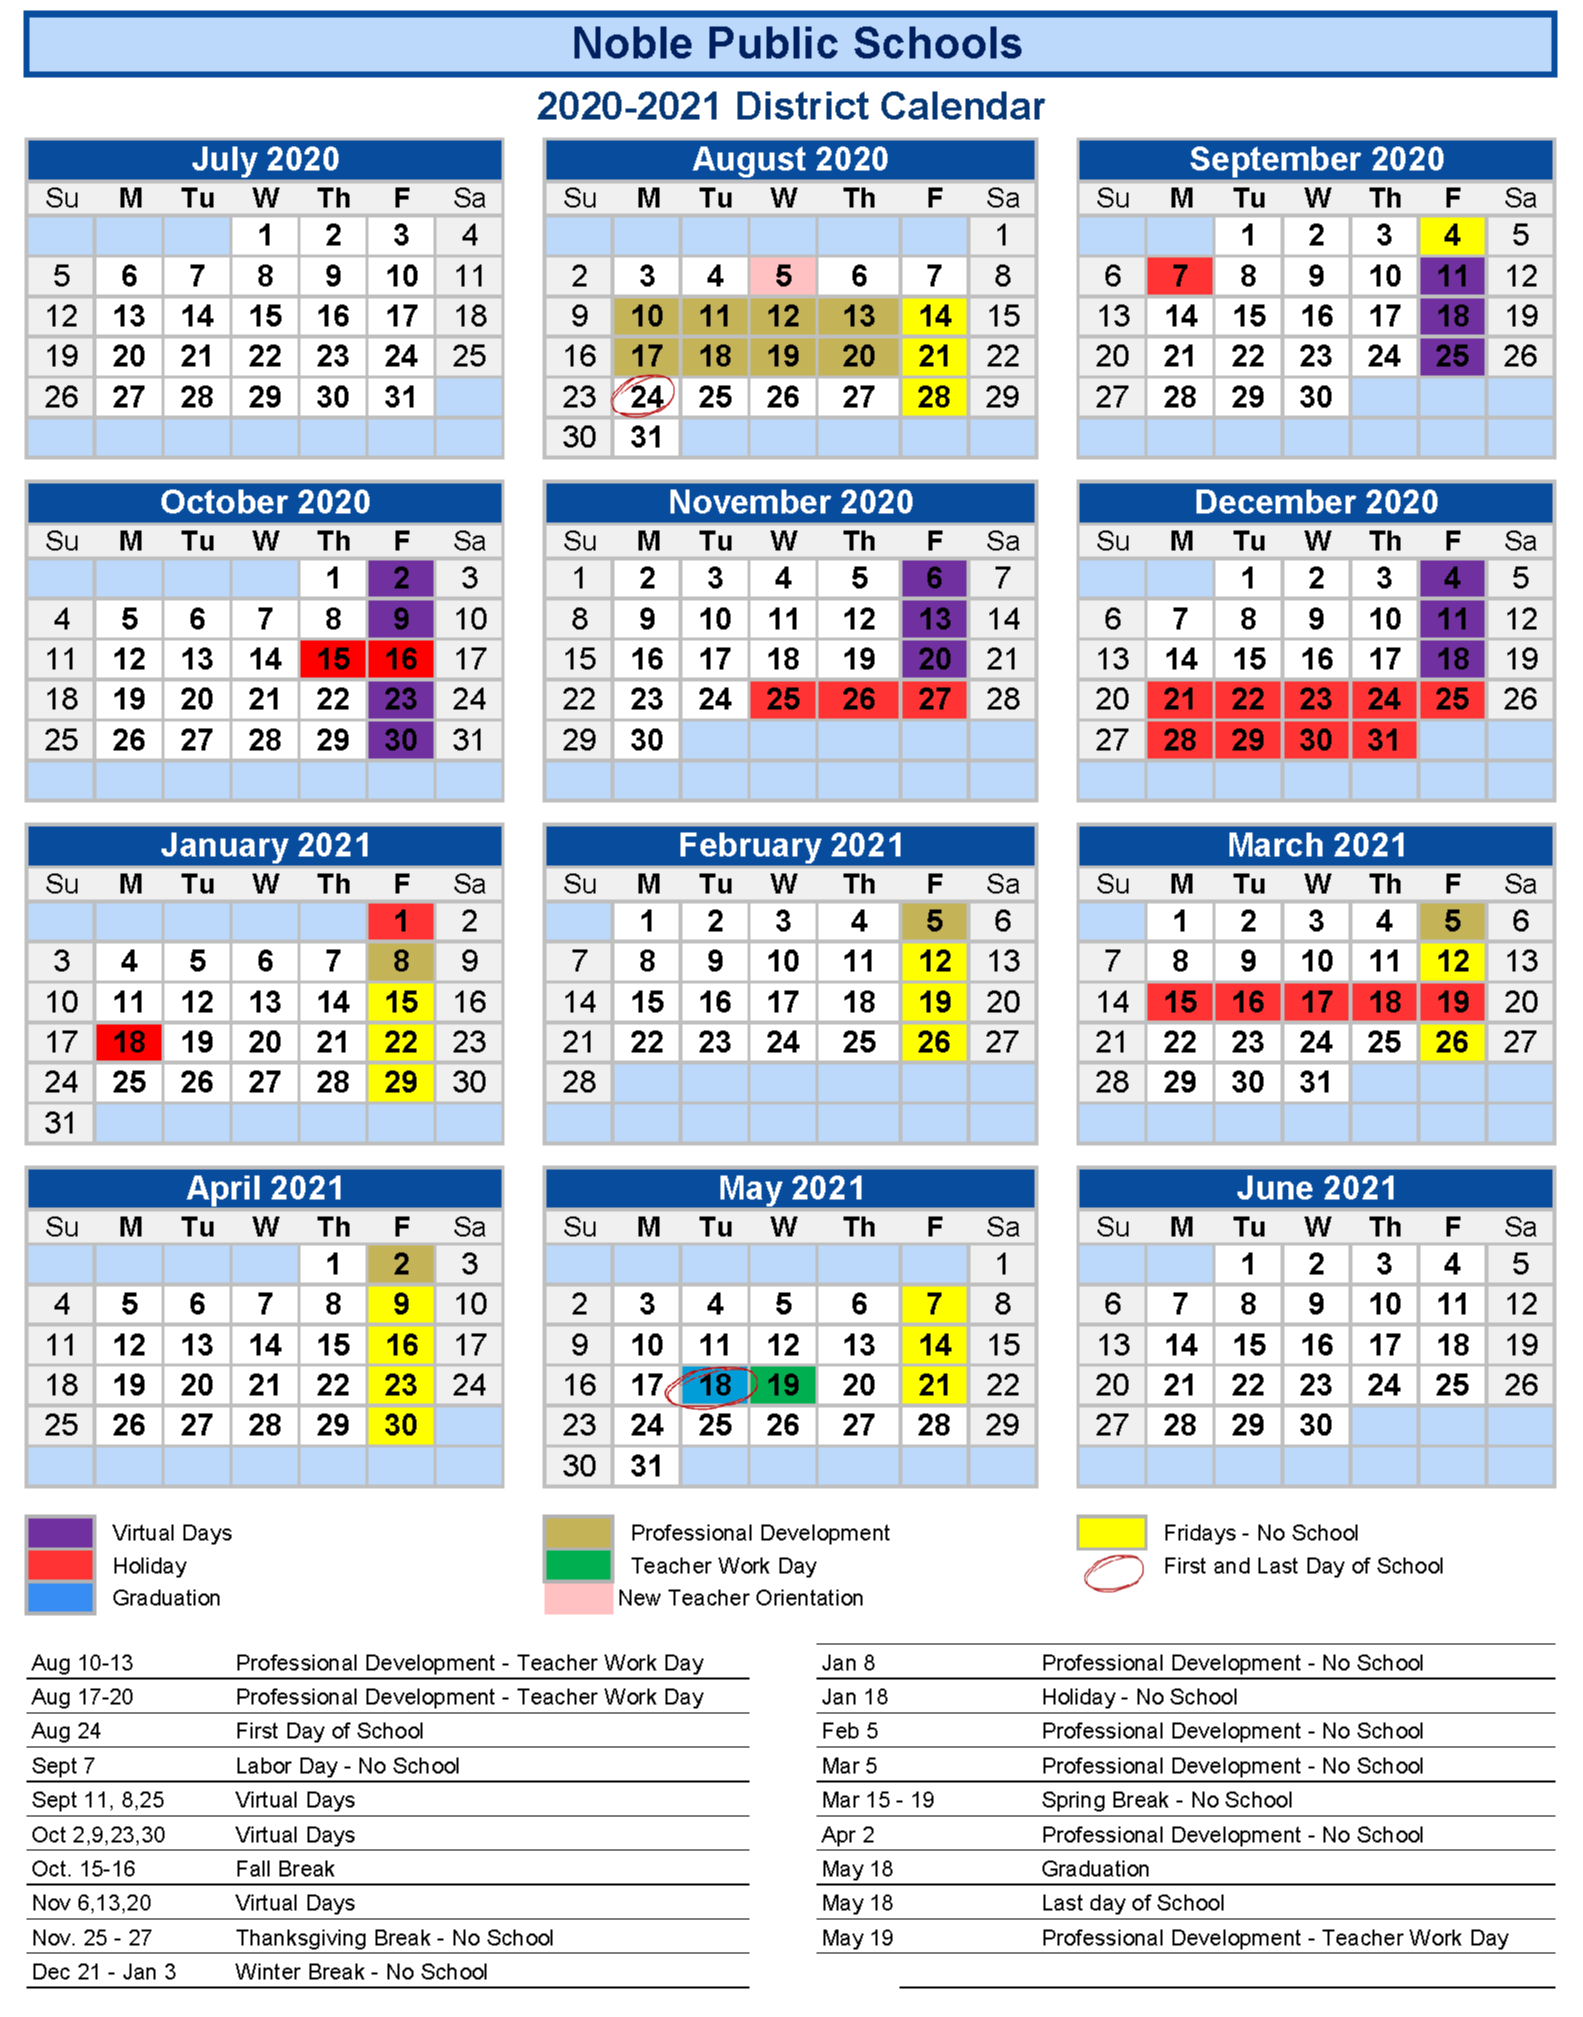 Calendar View | Noble Public Schools